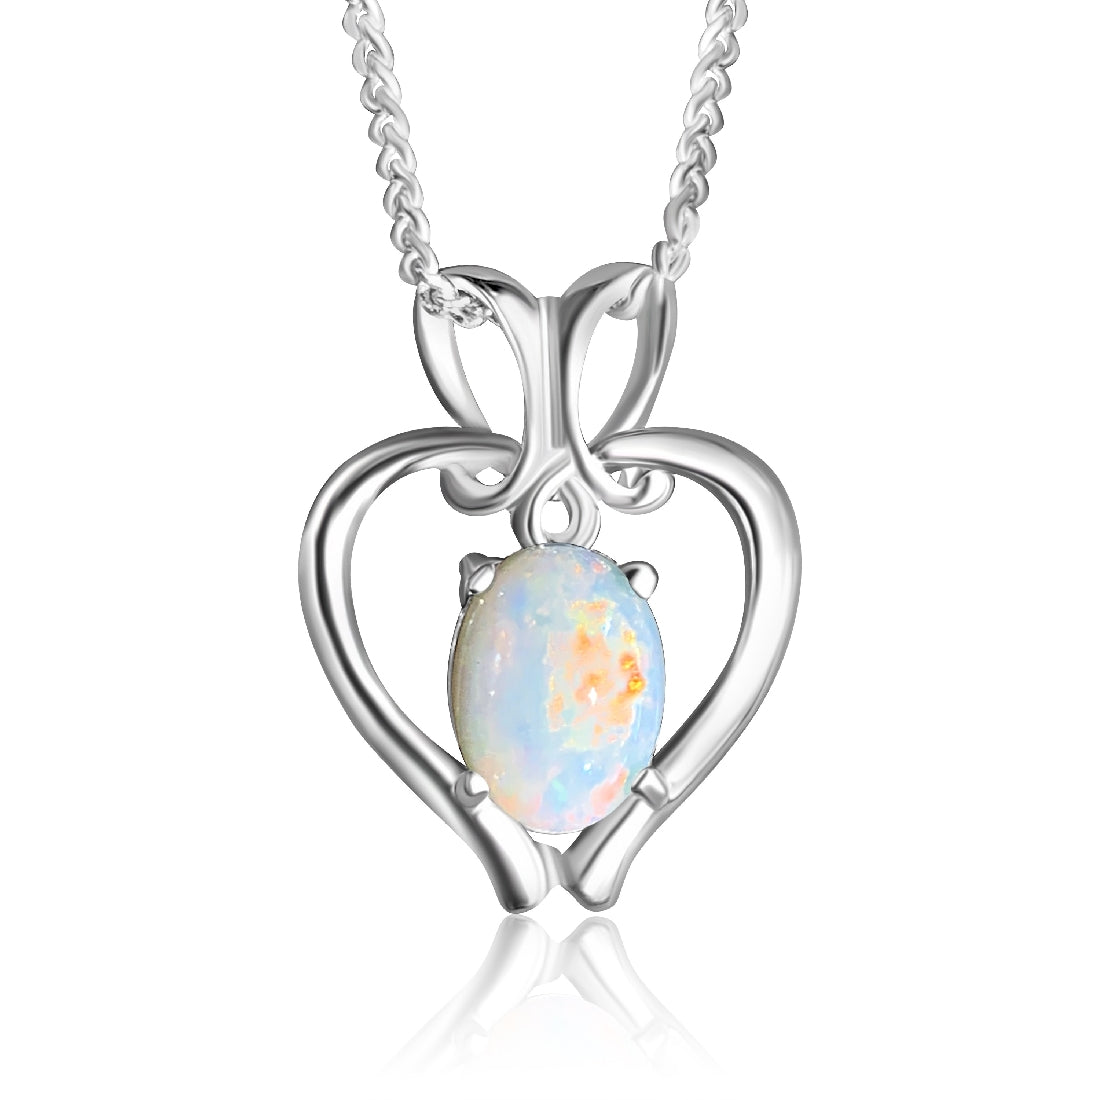 Sterling Silver Heart pendant 8x6mm White Opal - Masterpiece Jewellery Opal & Gems Sydney Australia | Online Shop